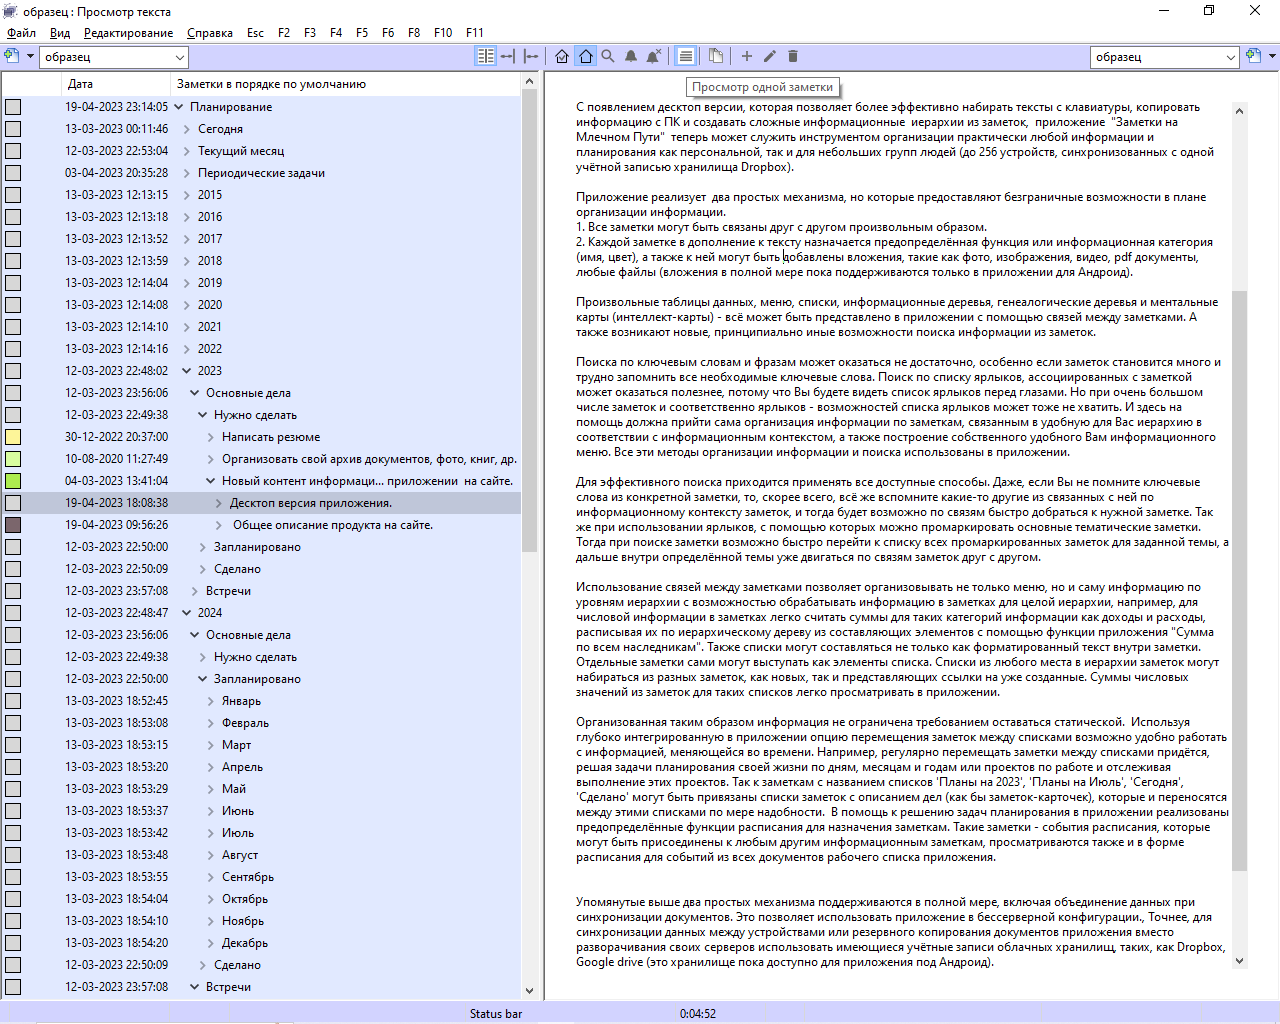 снимок экрана Windows десктоп приложения с деревом из заметок слева и развёрнутым текстом одной заметки справа